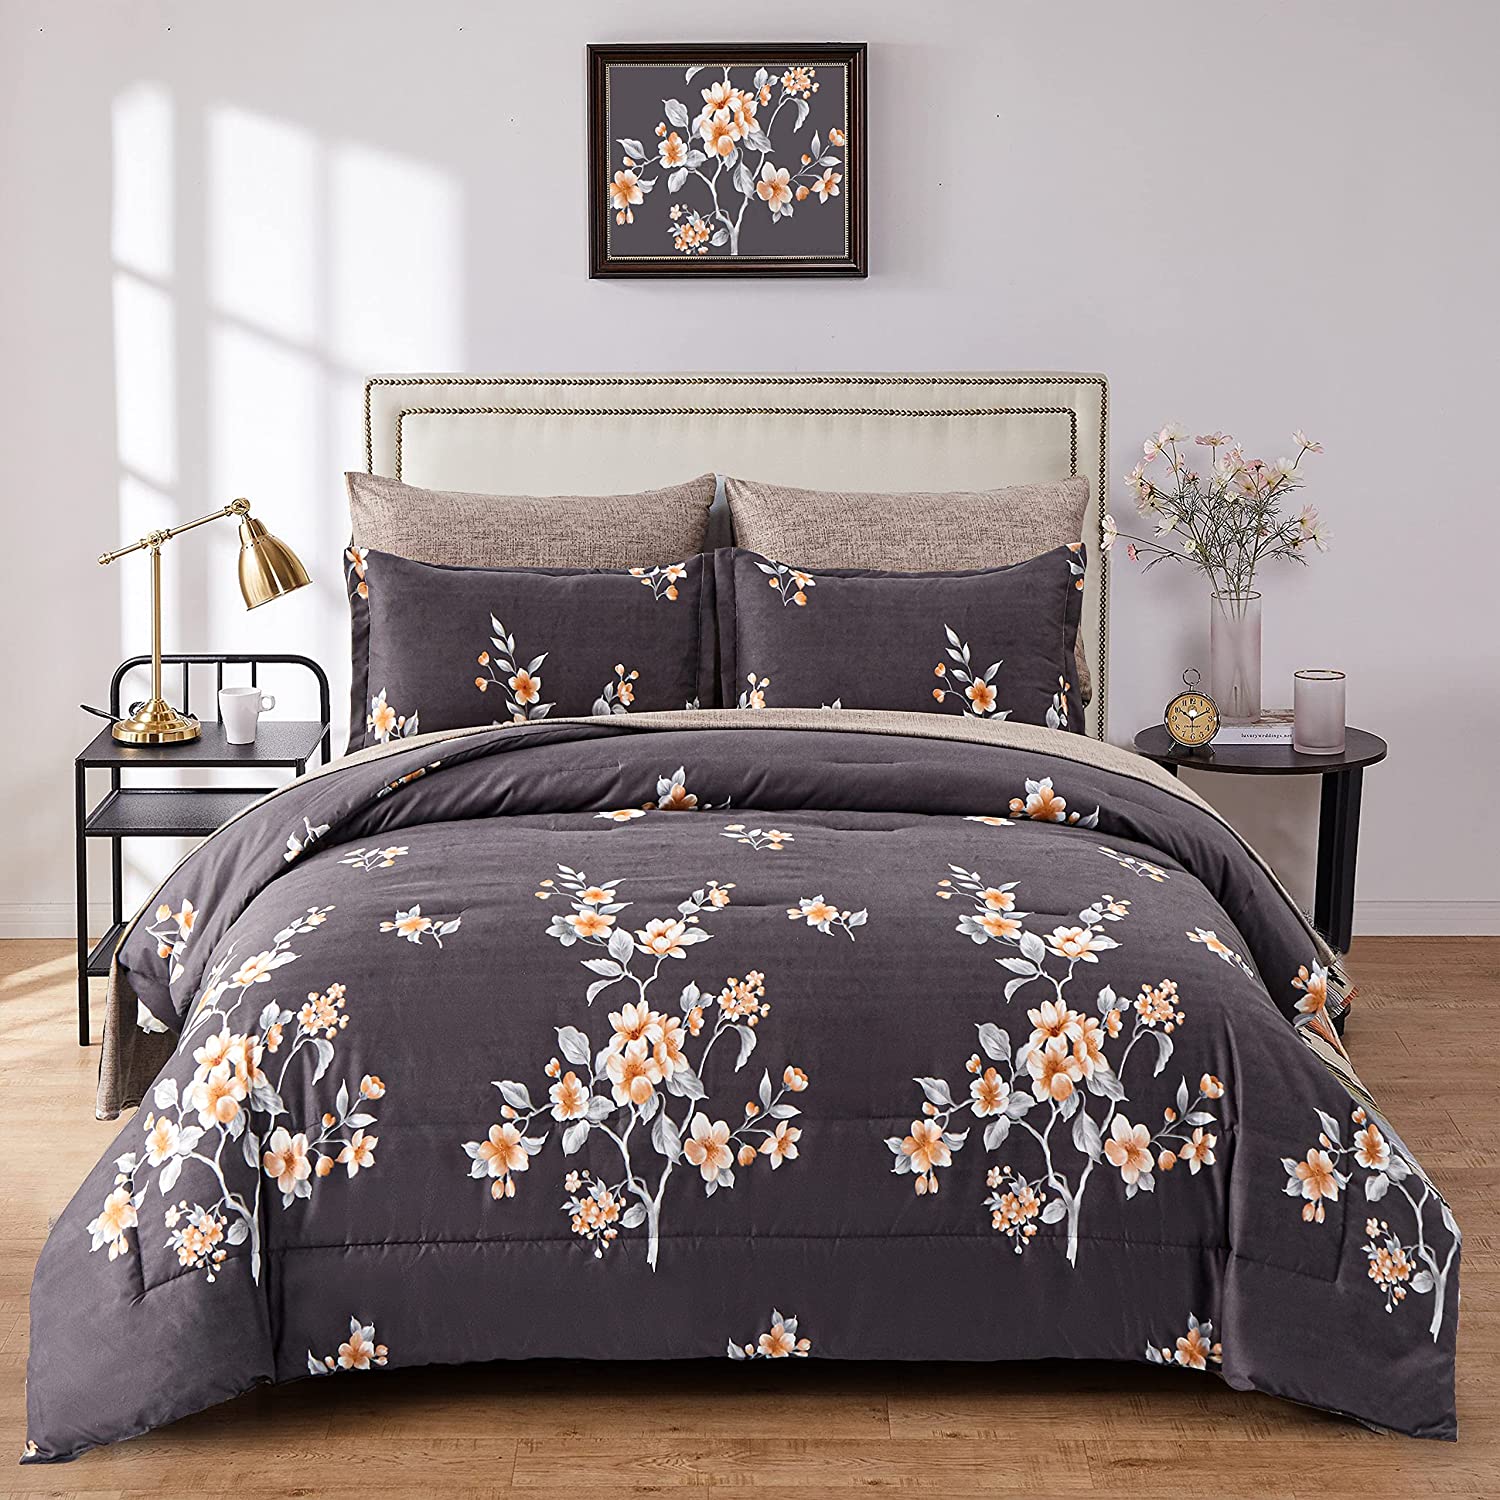 Luxudecor Floral Comforter Set Queen Size 7 Piece, Blush Flower Bed in a  Bag, Elegant Floral Comforter with Sheet Set, Soft Microfiber Bedding Set  for